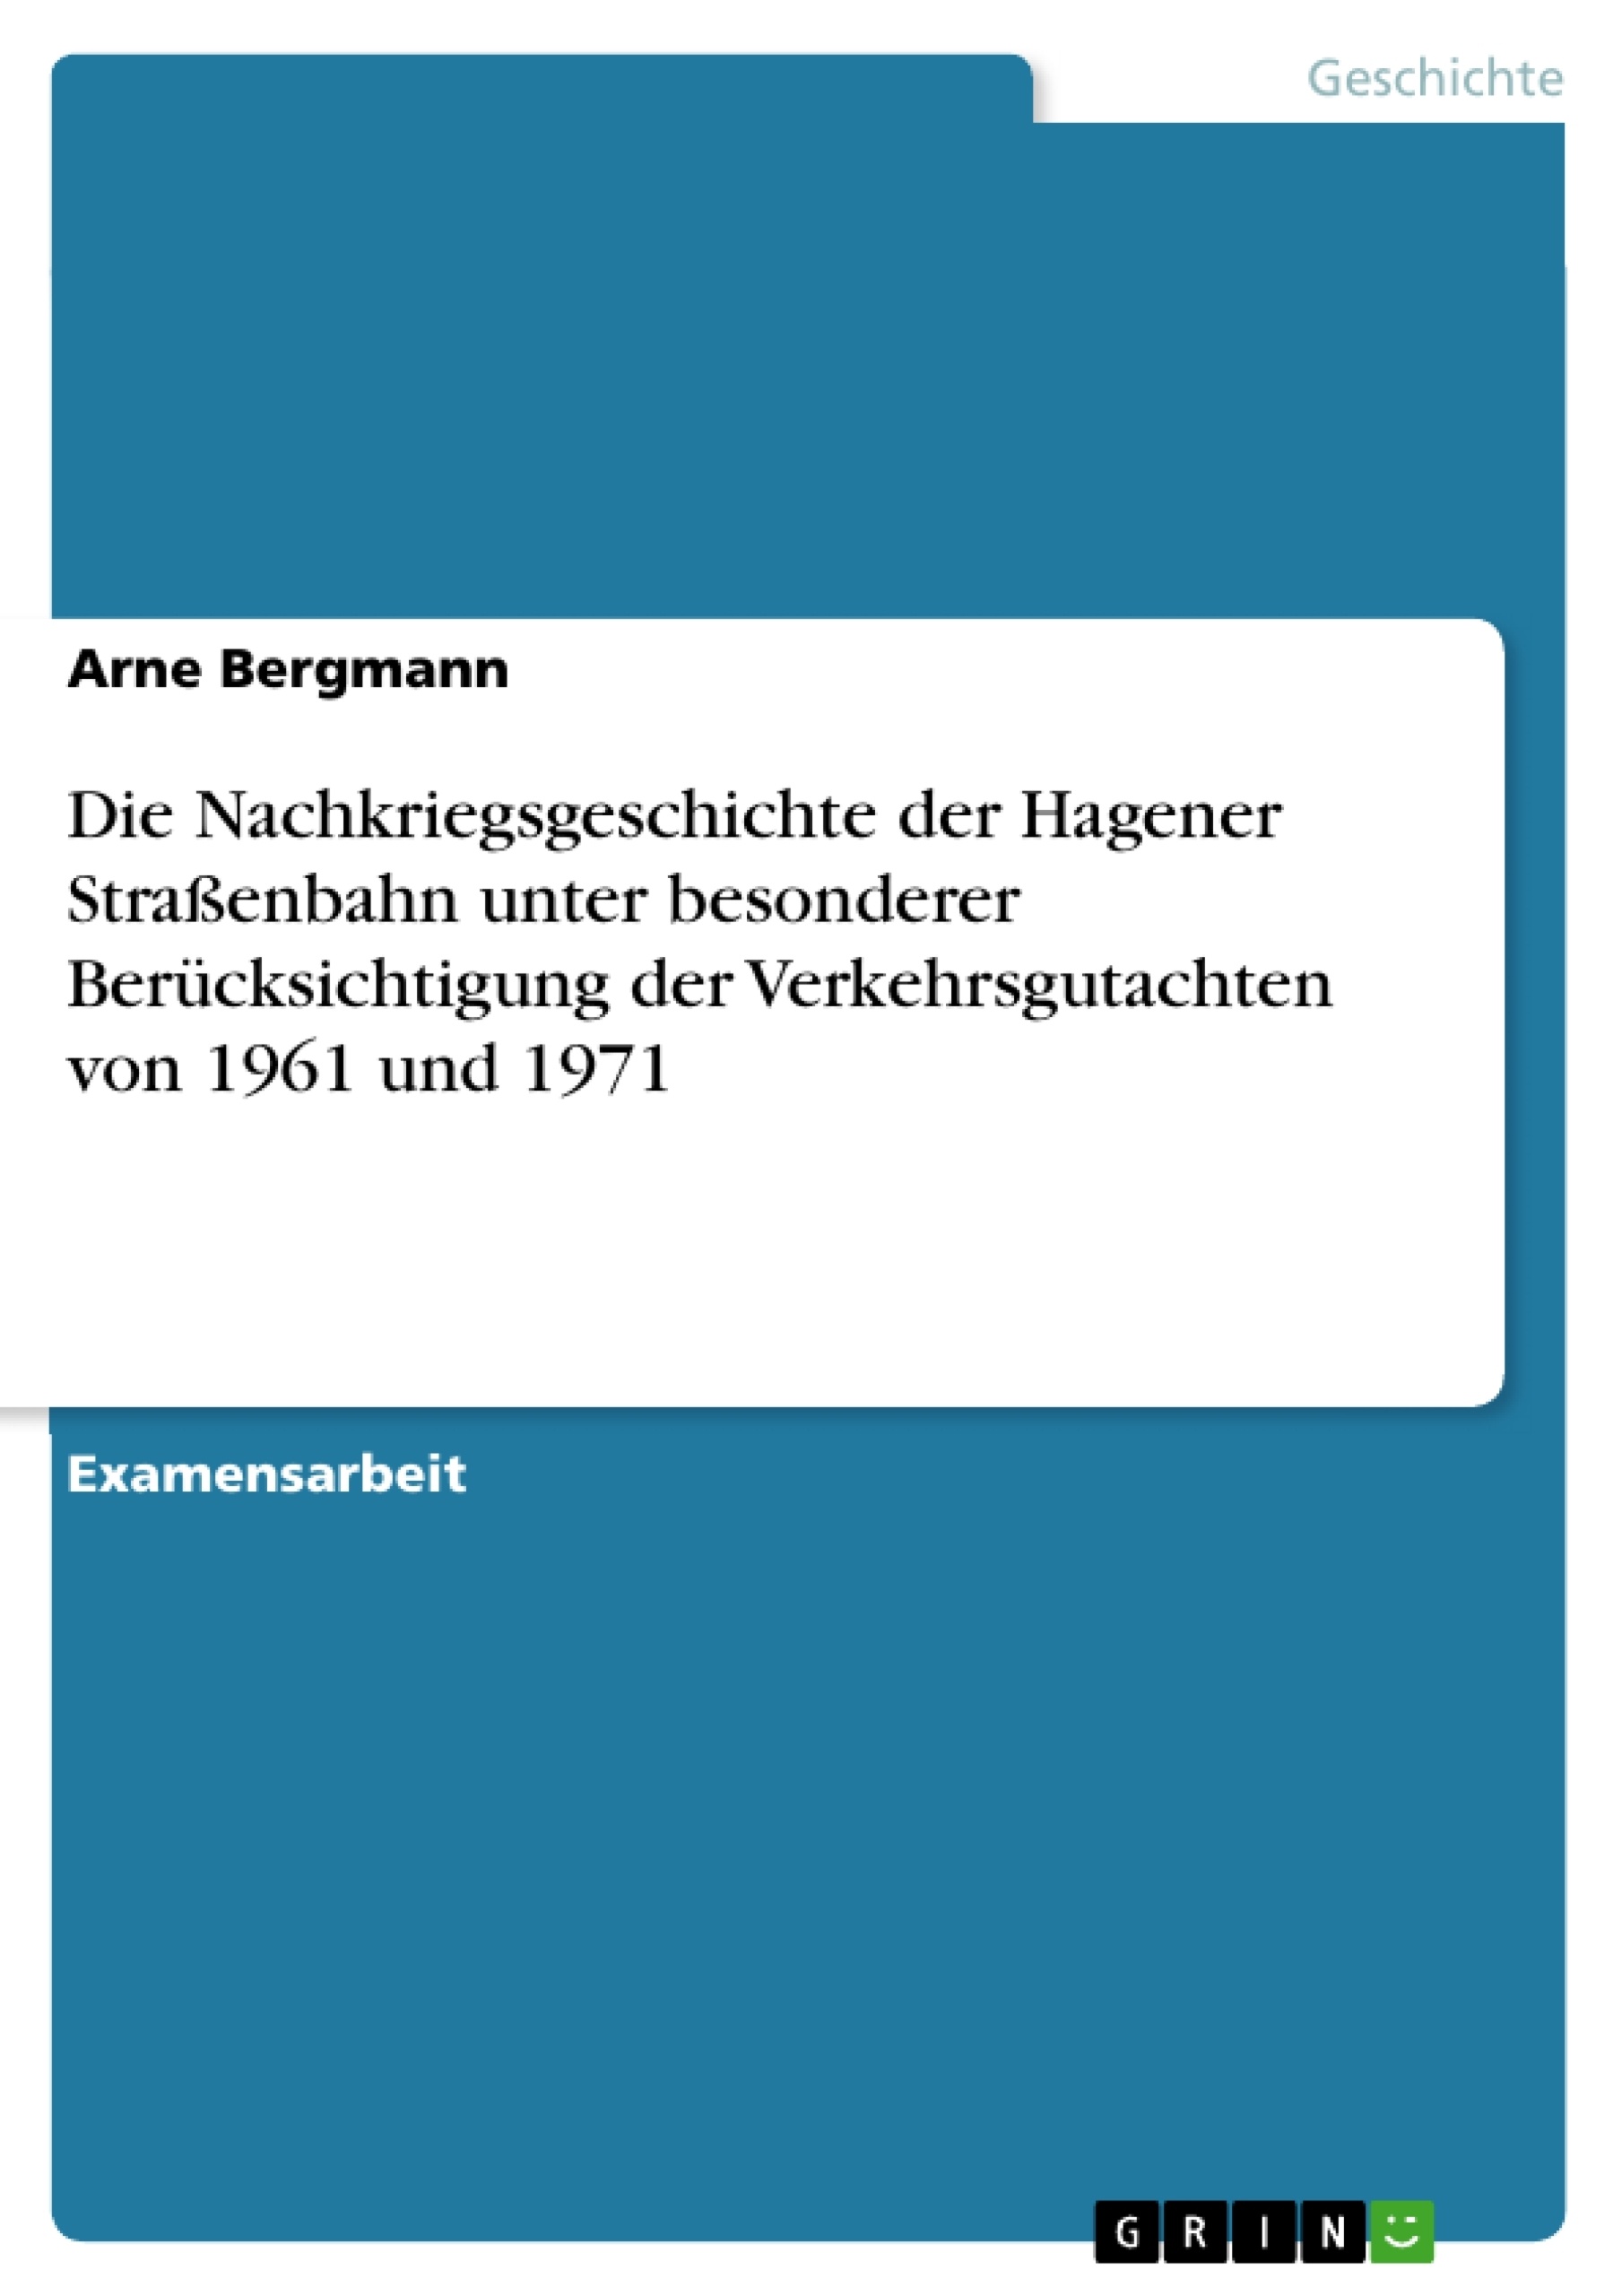 Título: Die Nachkriegsgeschichte der Hagener Straßenbahn unter besonderer Berücksichtigung der Verkehrsgutachten von 1961 und 1971